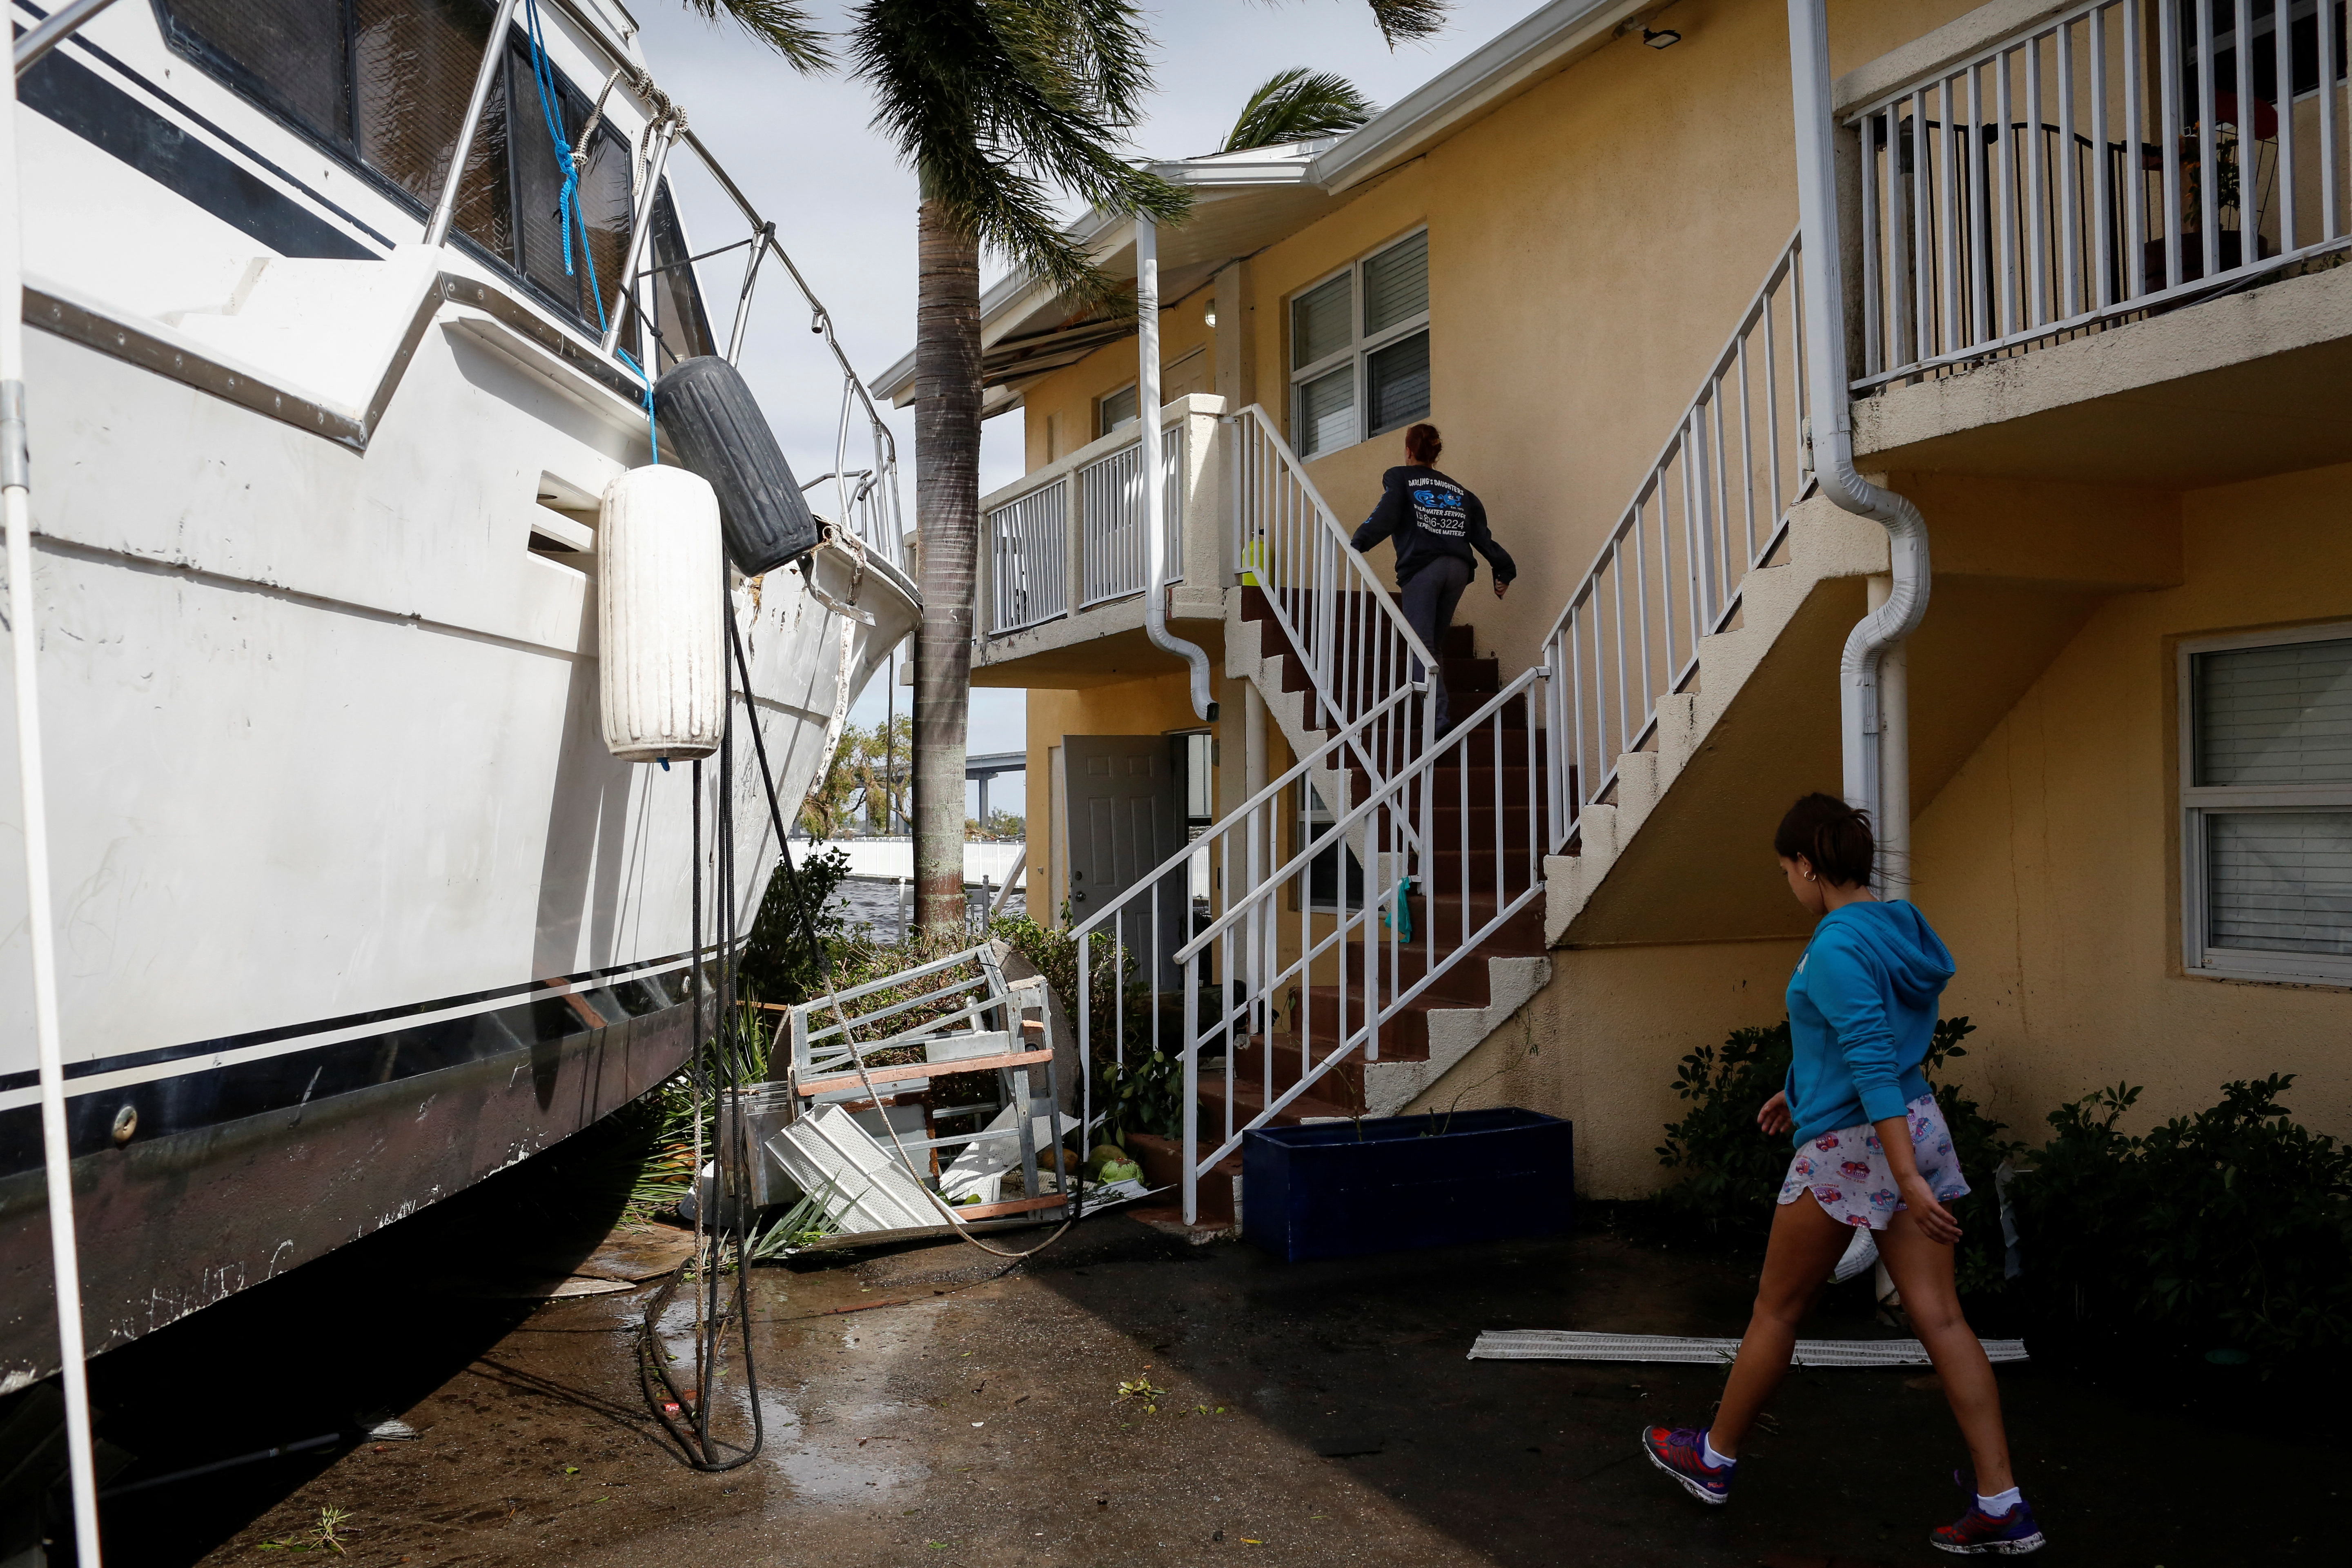 Las mujeres caminan junto a un bote dañado en medio de un condominio en el centro de la ciudad después de que el huracán Ian causara una destrucción generalizada, en Fort Myers, Florida, EE. UU., el 29 de septiembre de 2022. (REUTERS/Marco Bello)